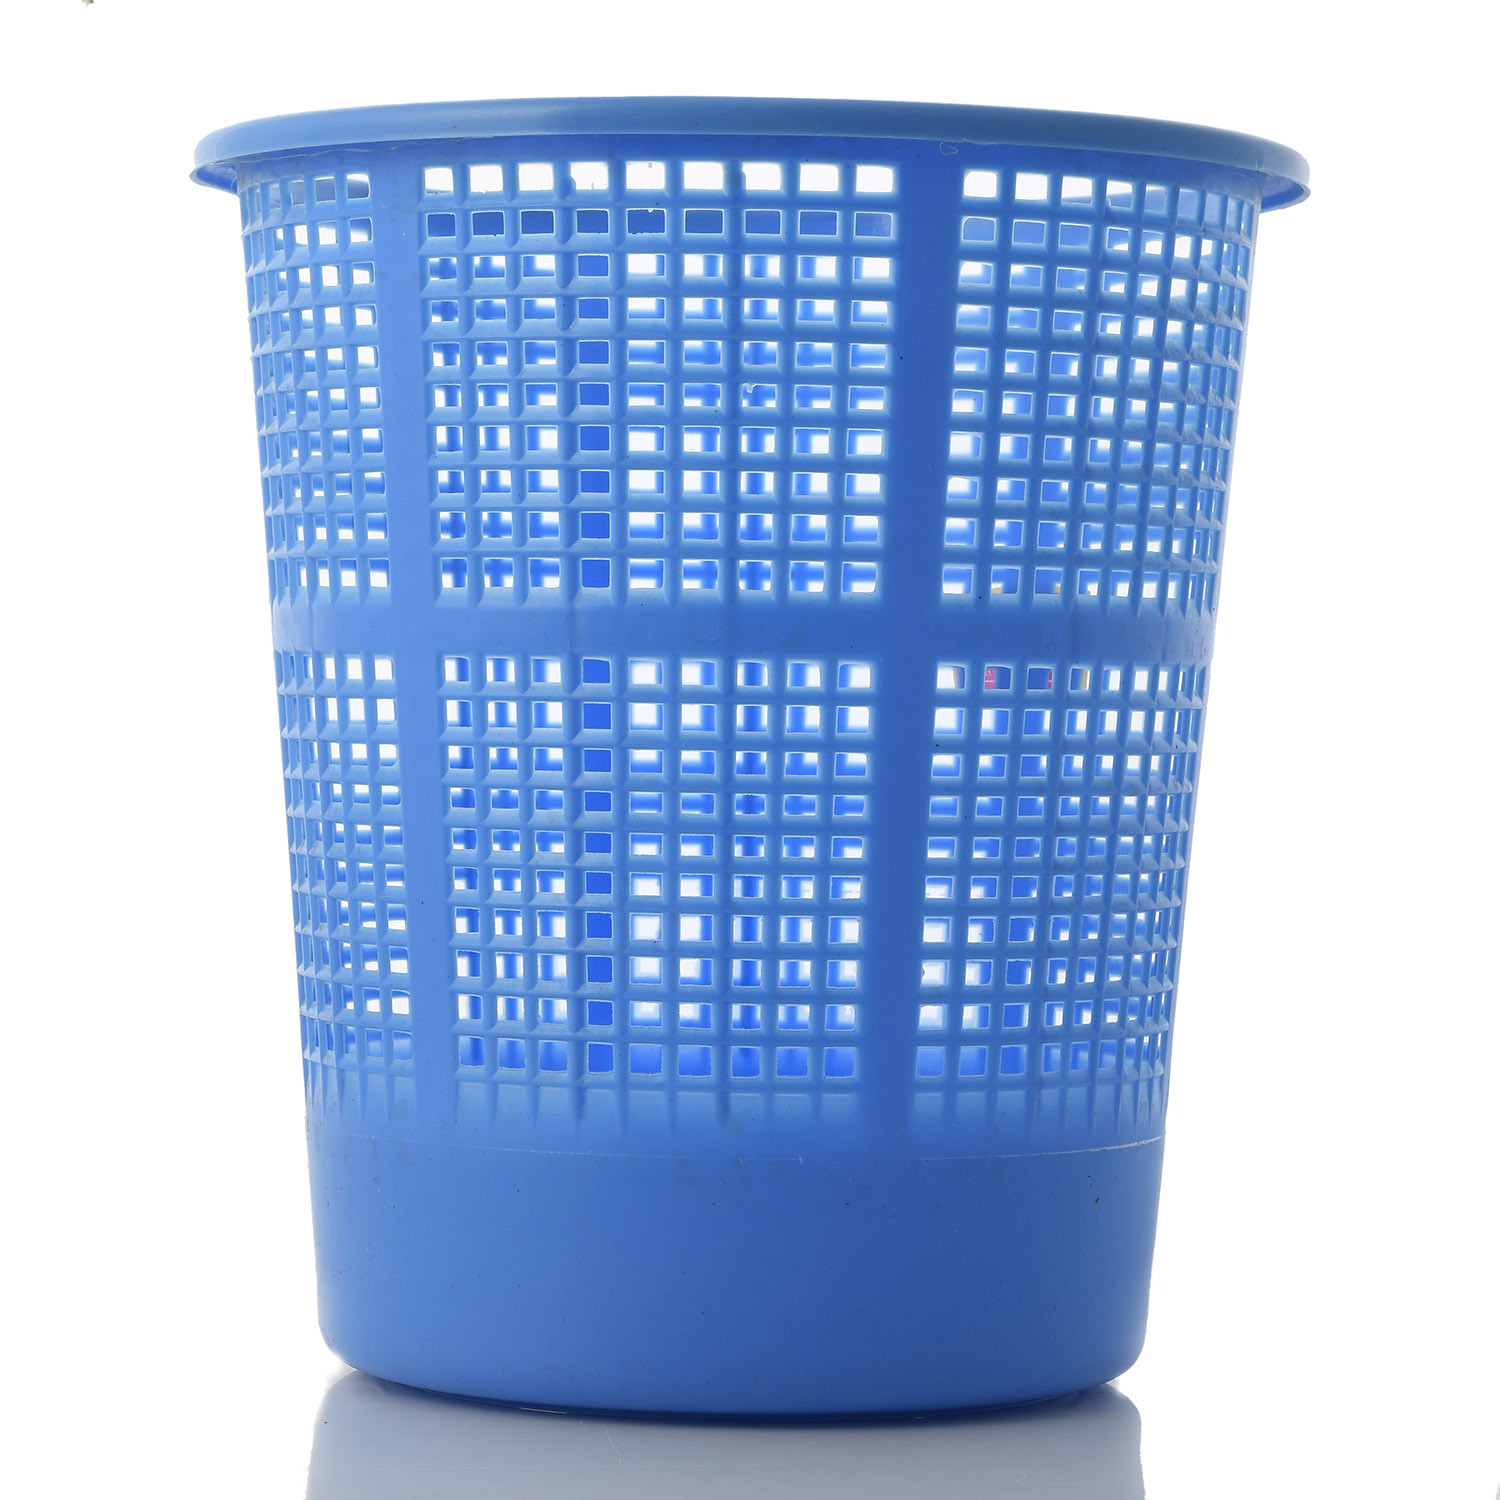 Kuber Industries Plastic Mesh Dustbin Garbage Bin for Office use, School, Bedroom,Kids Room, Home, Multi Purpose,5 Liters (Blue & Grey)